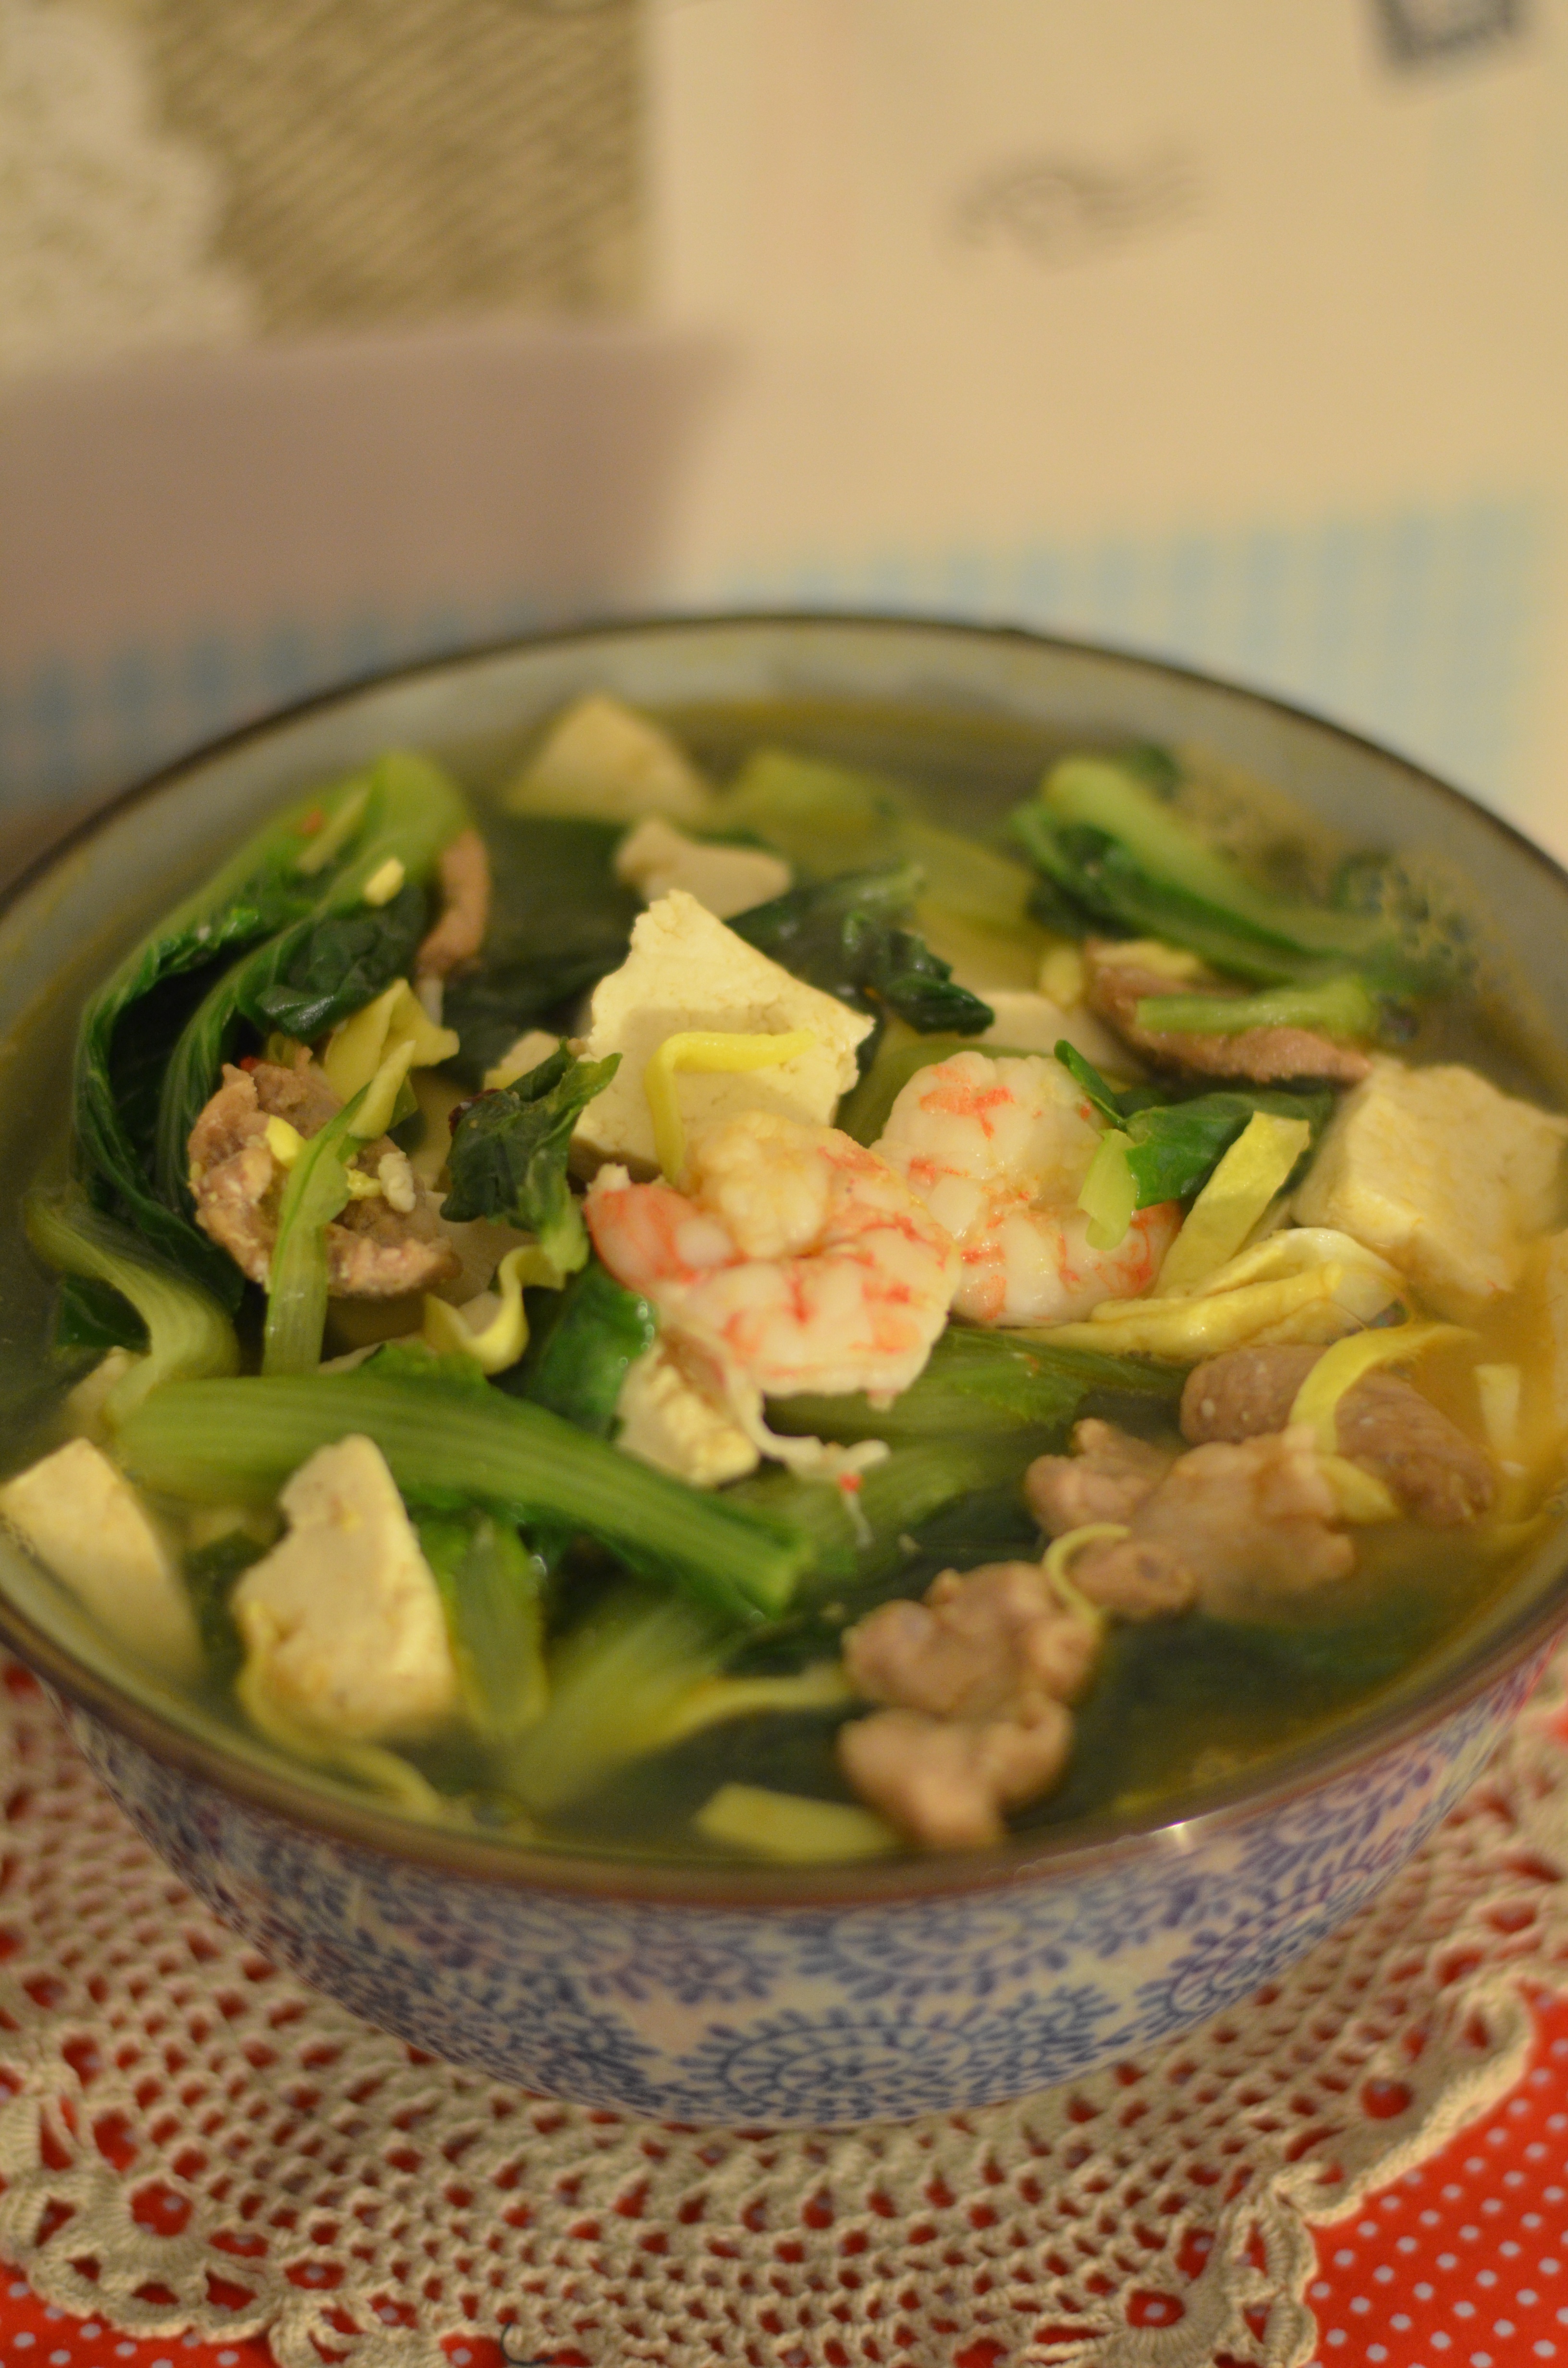 小白菜鲜虾豆腐煲的做法